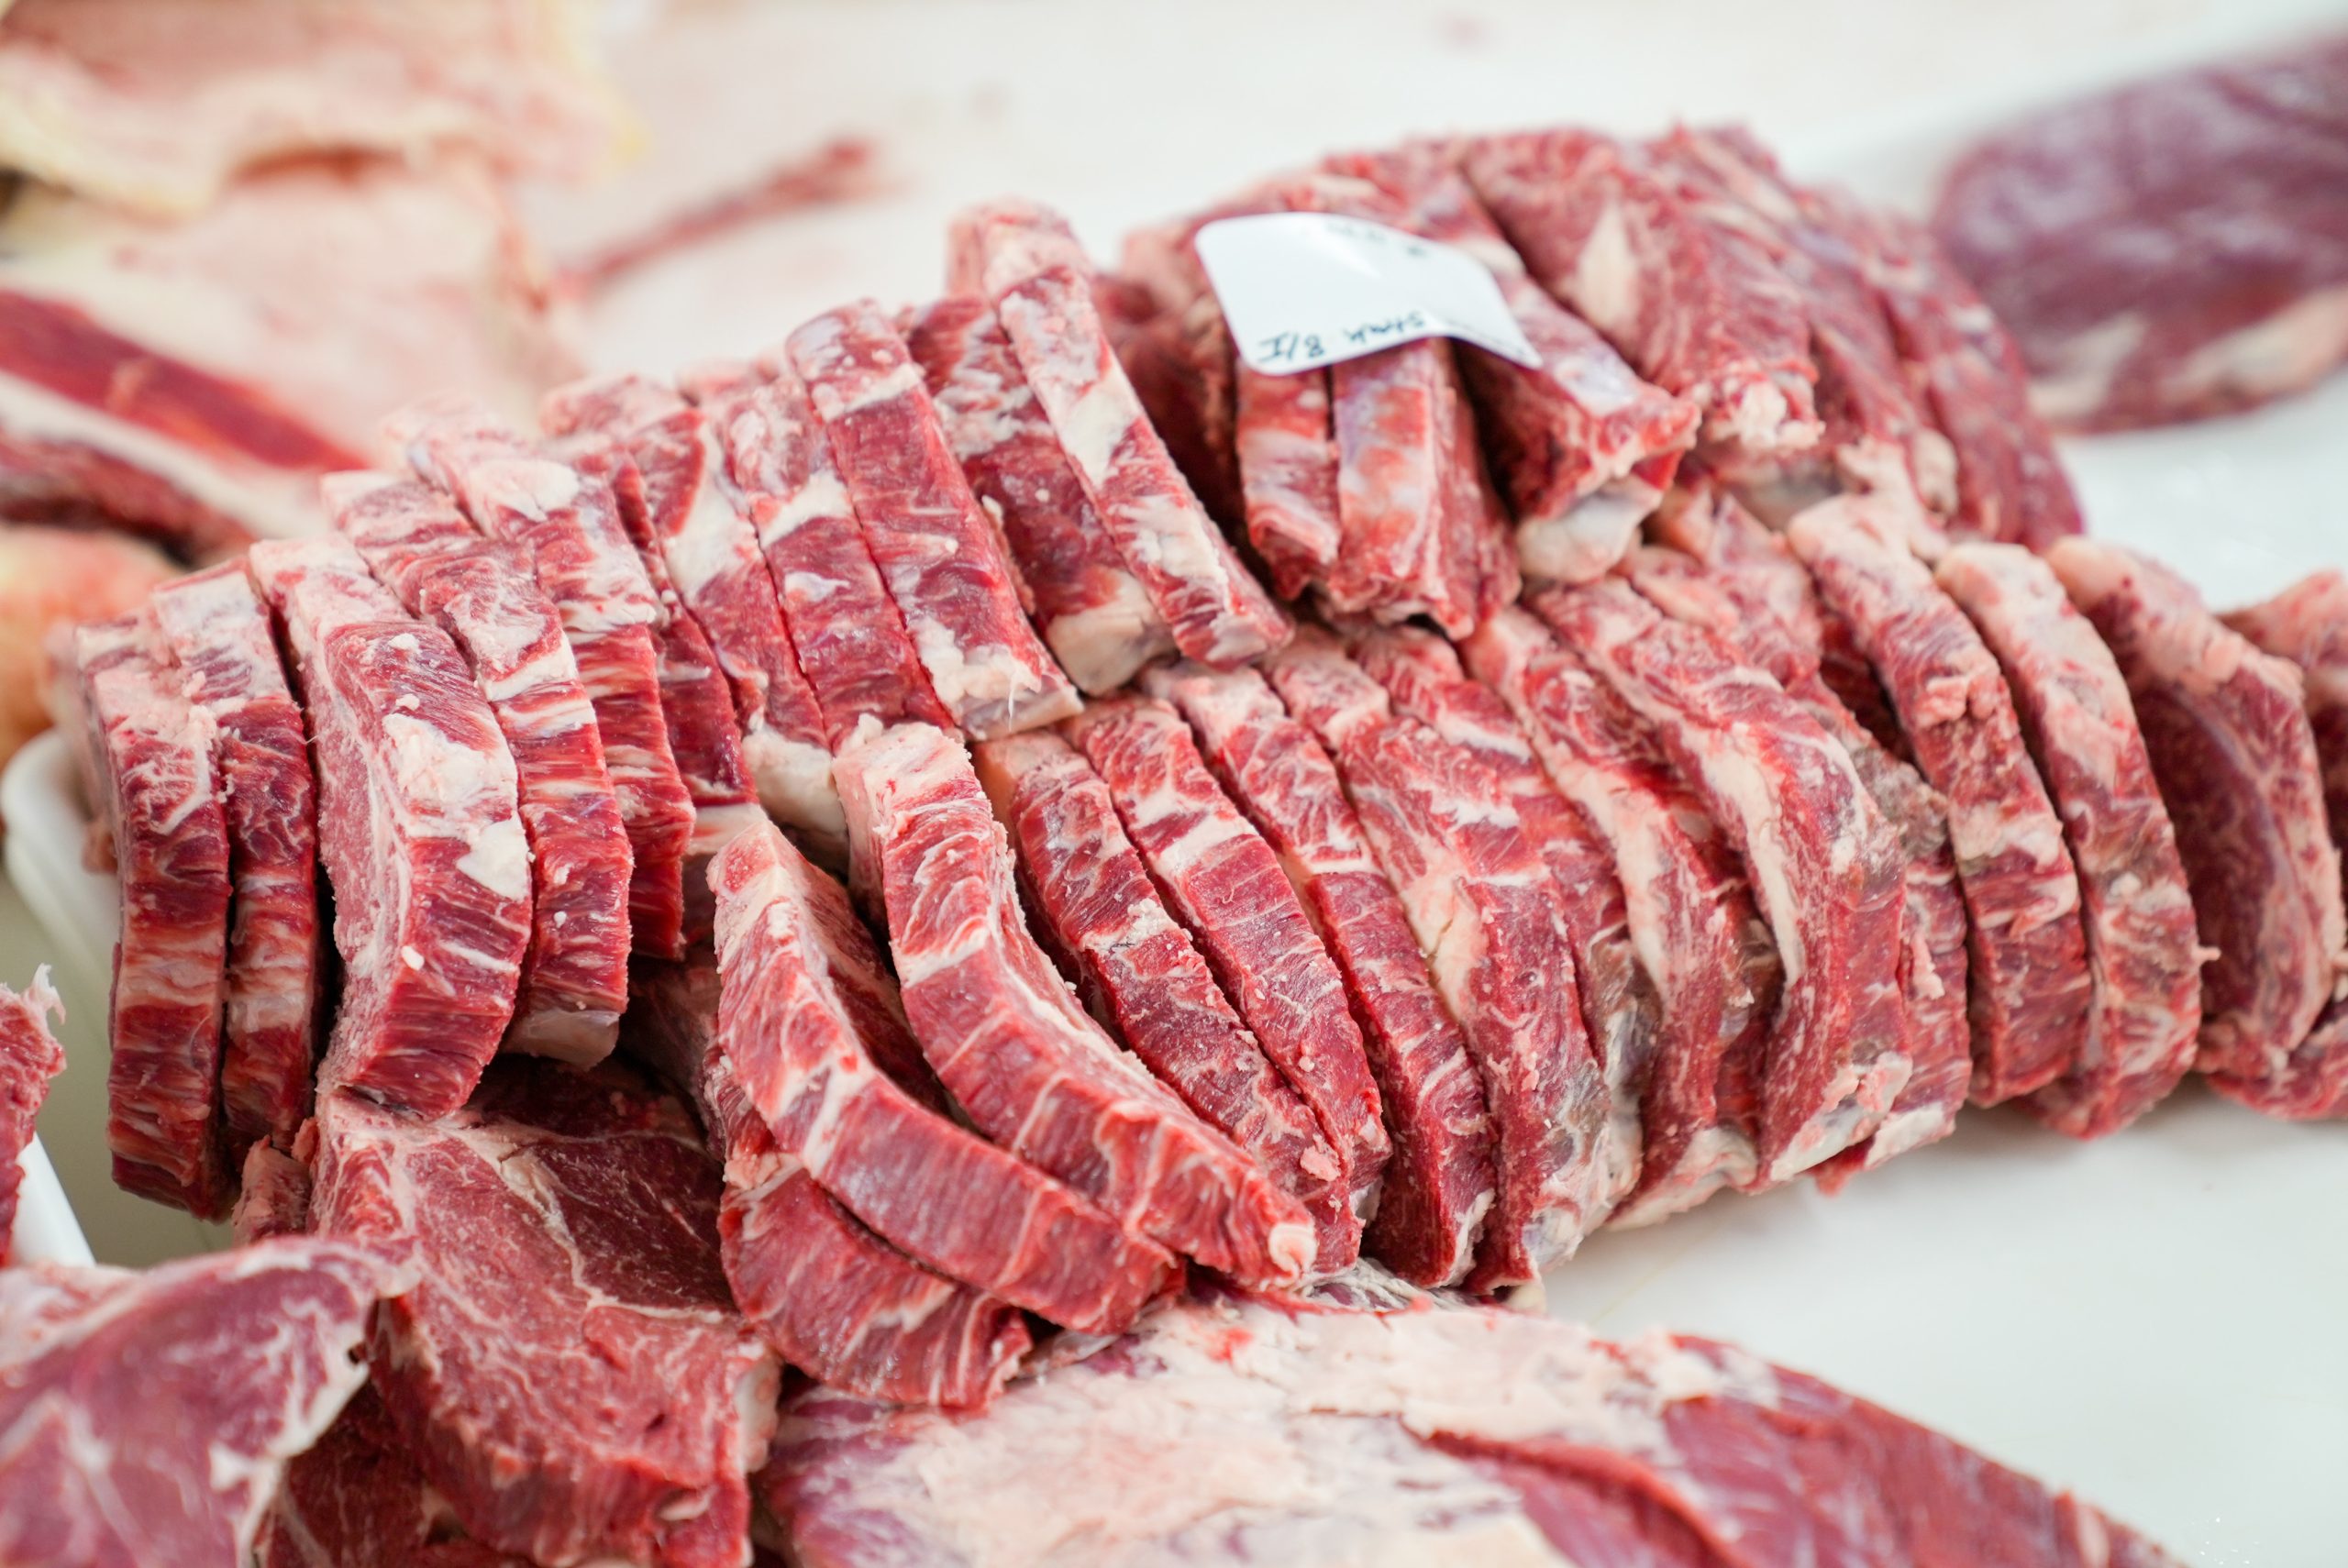 67% dos brasileiros deixaram de comprar carne vermelha